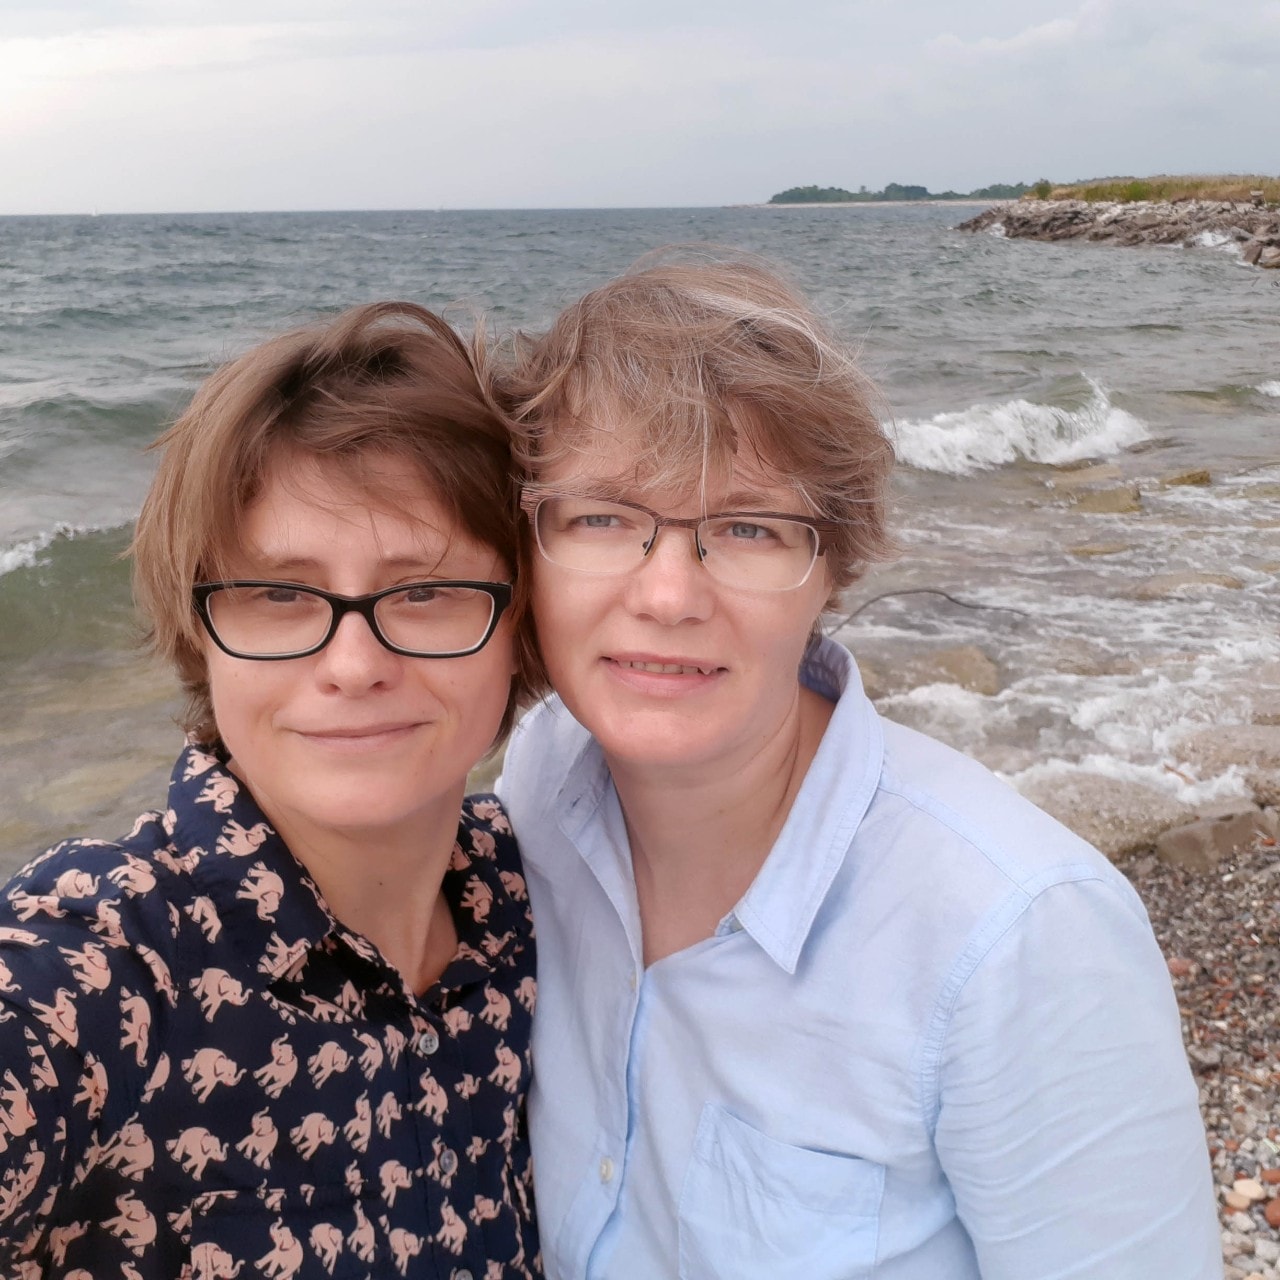 Irina Zlobina with her partner Olga Kochetkova at the beach